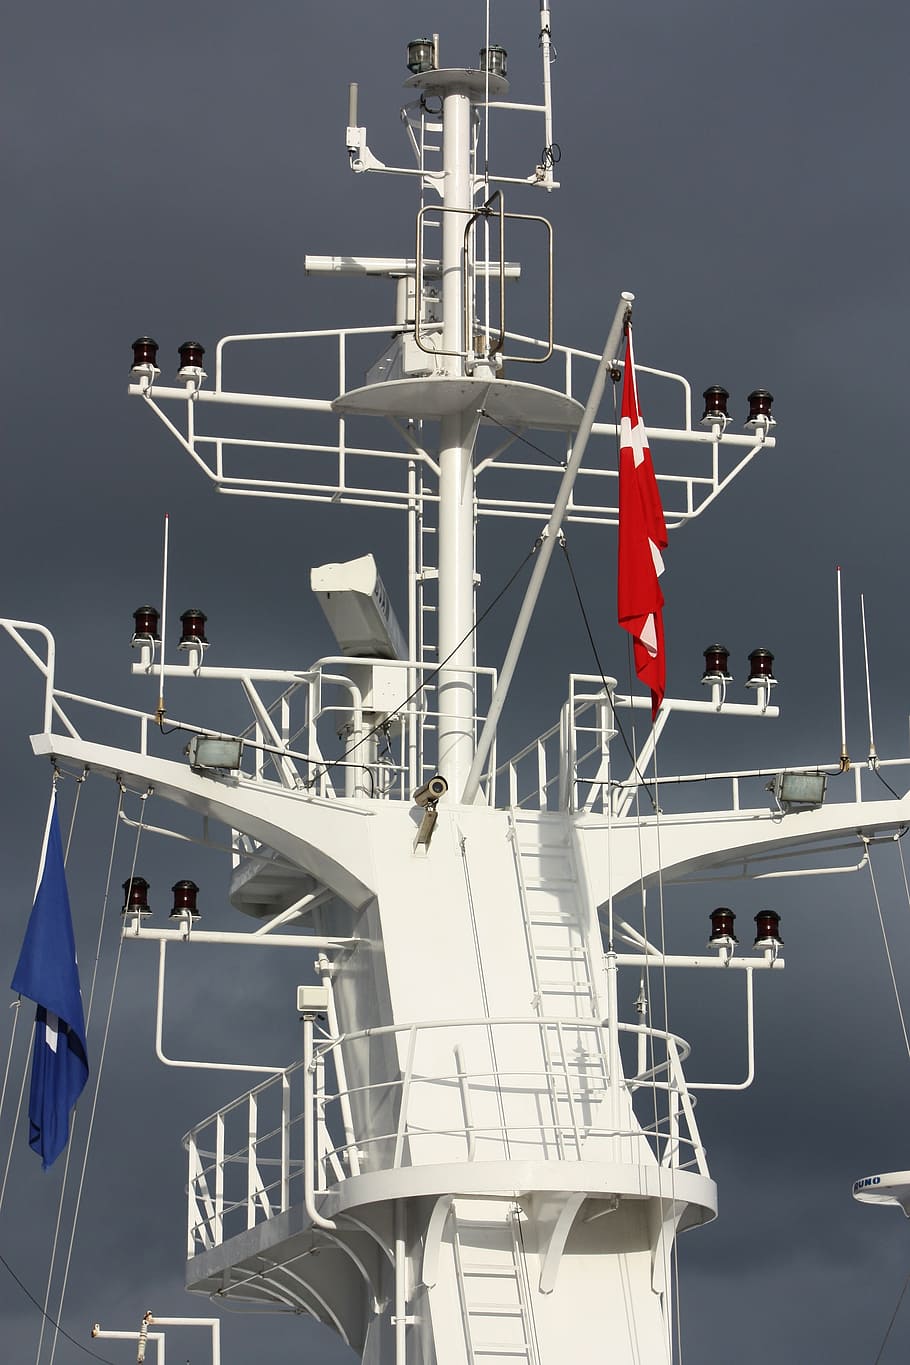 danés, bandera danesa, dannebrog, cielo, barco, transbordador, dinamarca, bandera, embarcación náutica, transporte